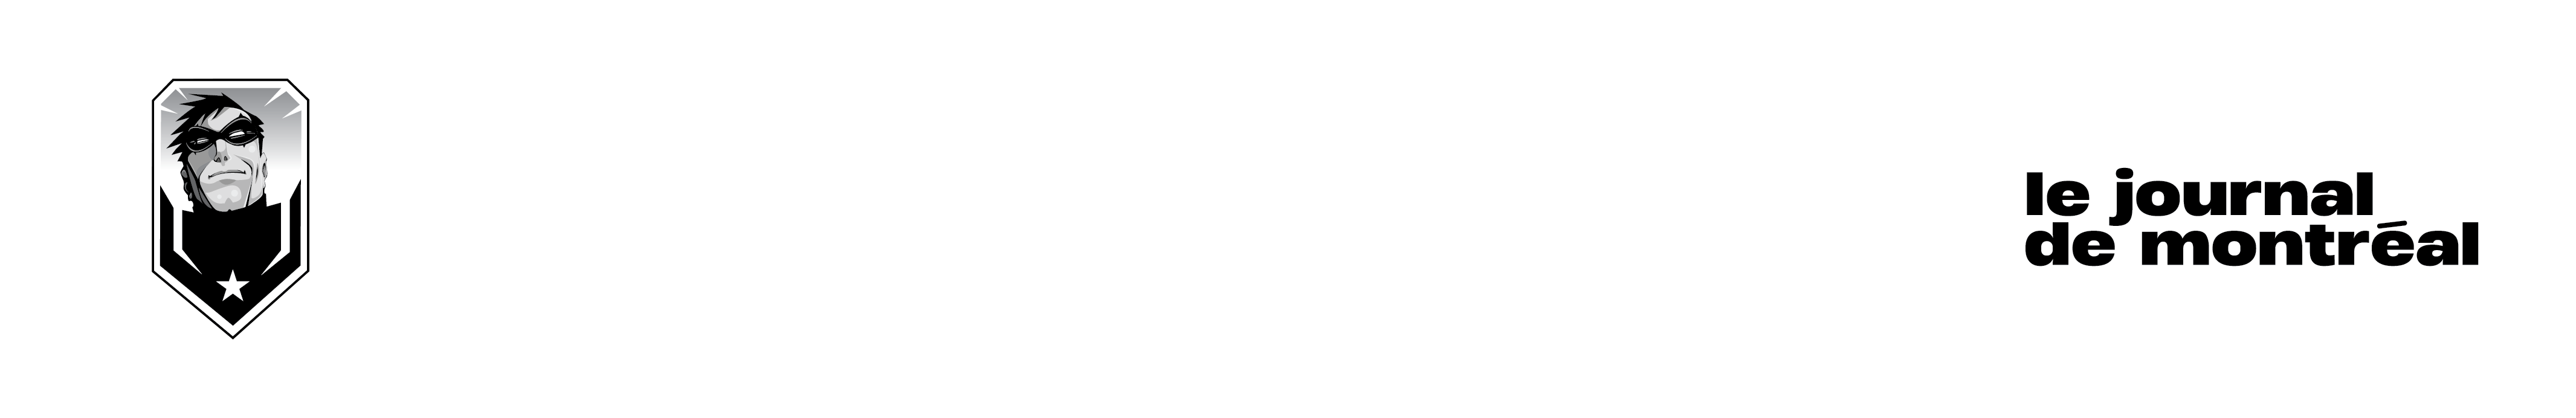 Heures d'ouverture - Comiccon de Montréal